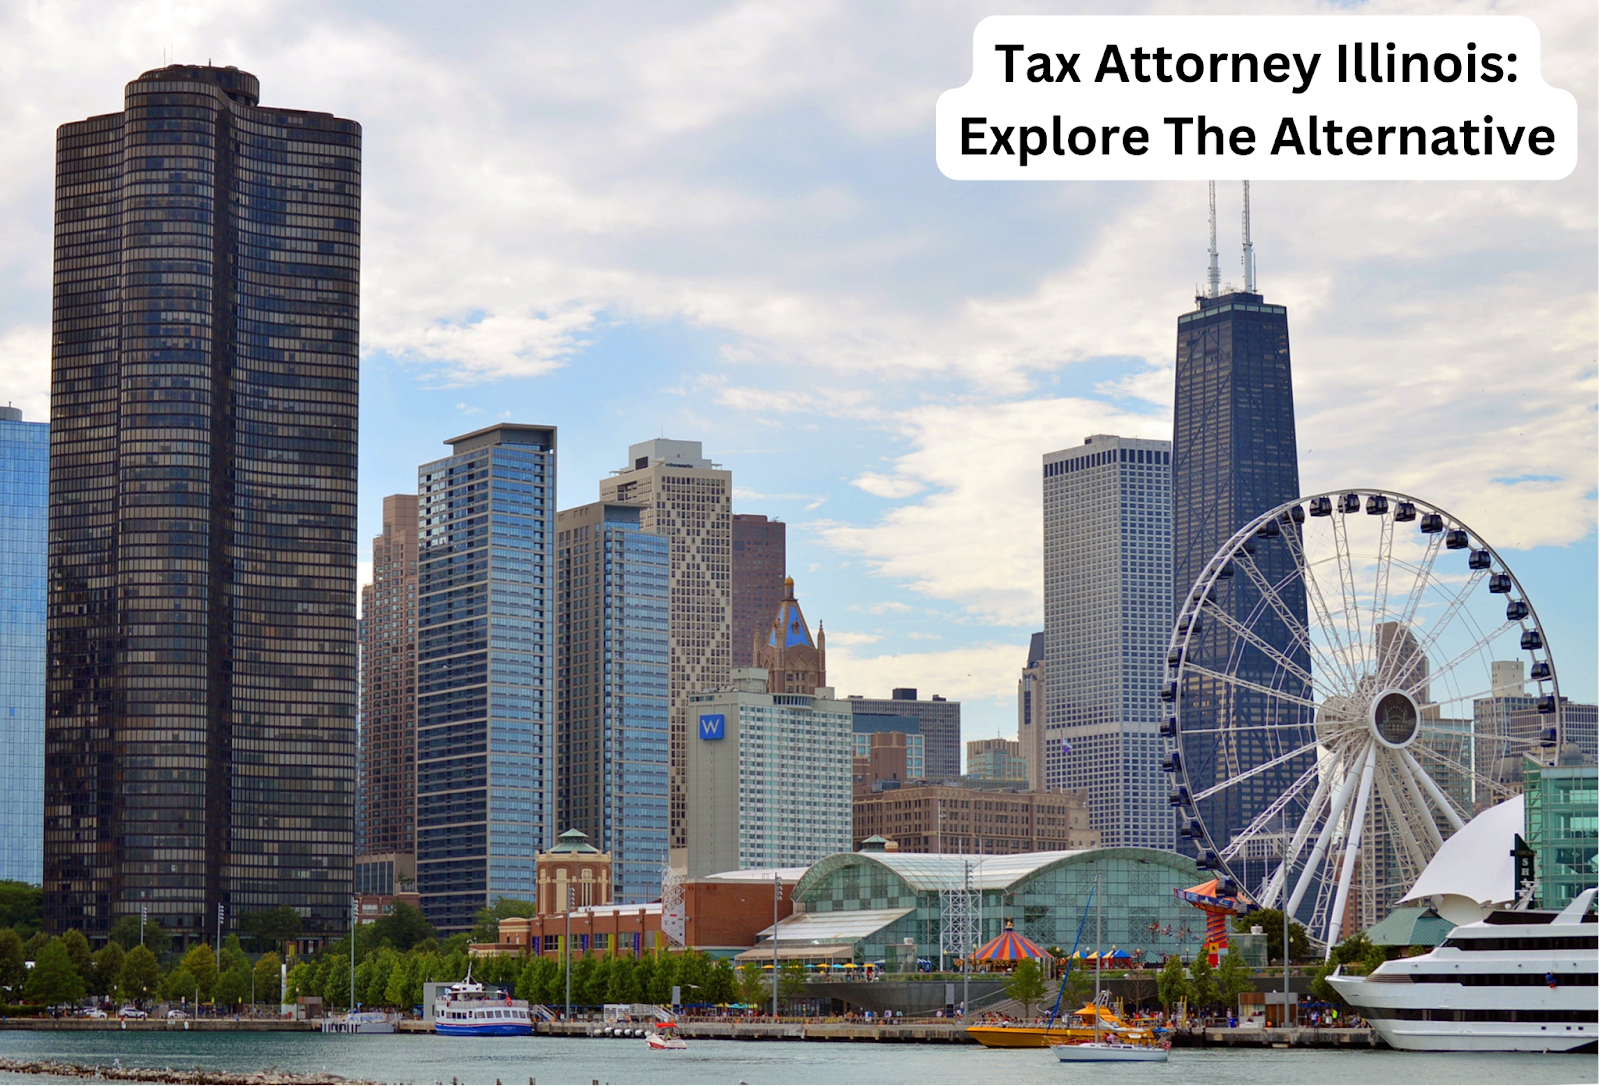 Tax Attorney Illinois: Explore The Alternative